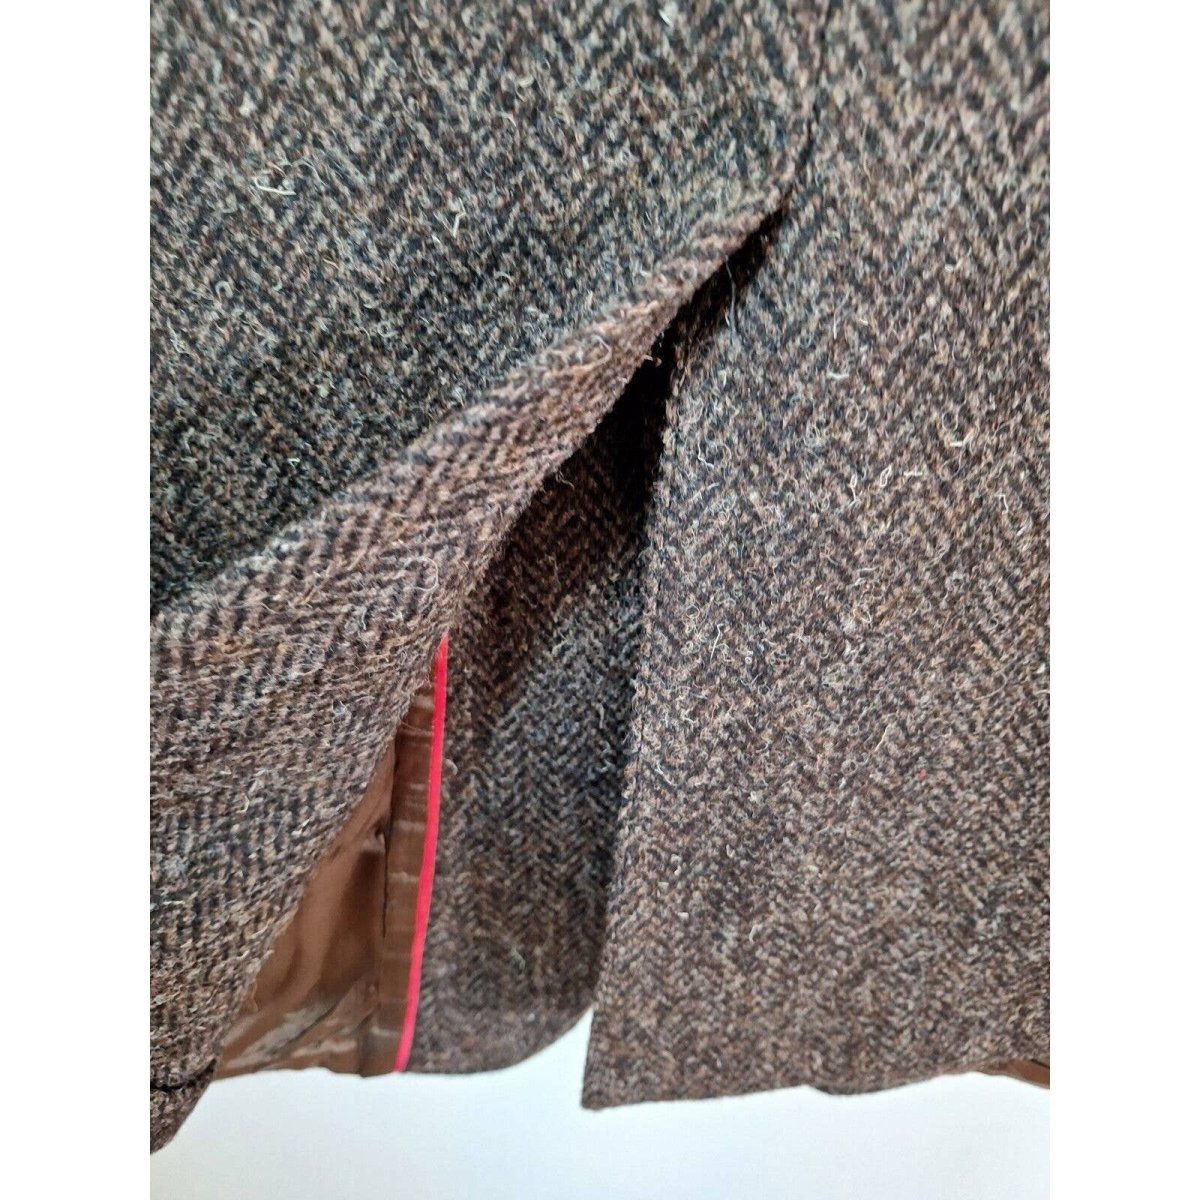 Vintage Wool Herringbone Sport Jacket 40-41 Short - themallvintage The Mall Vintage